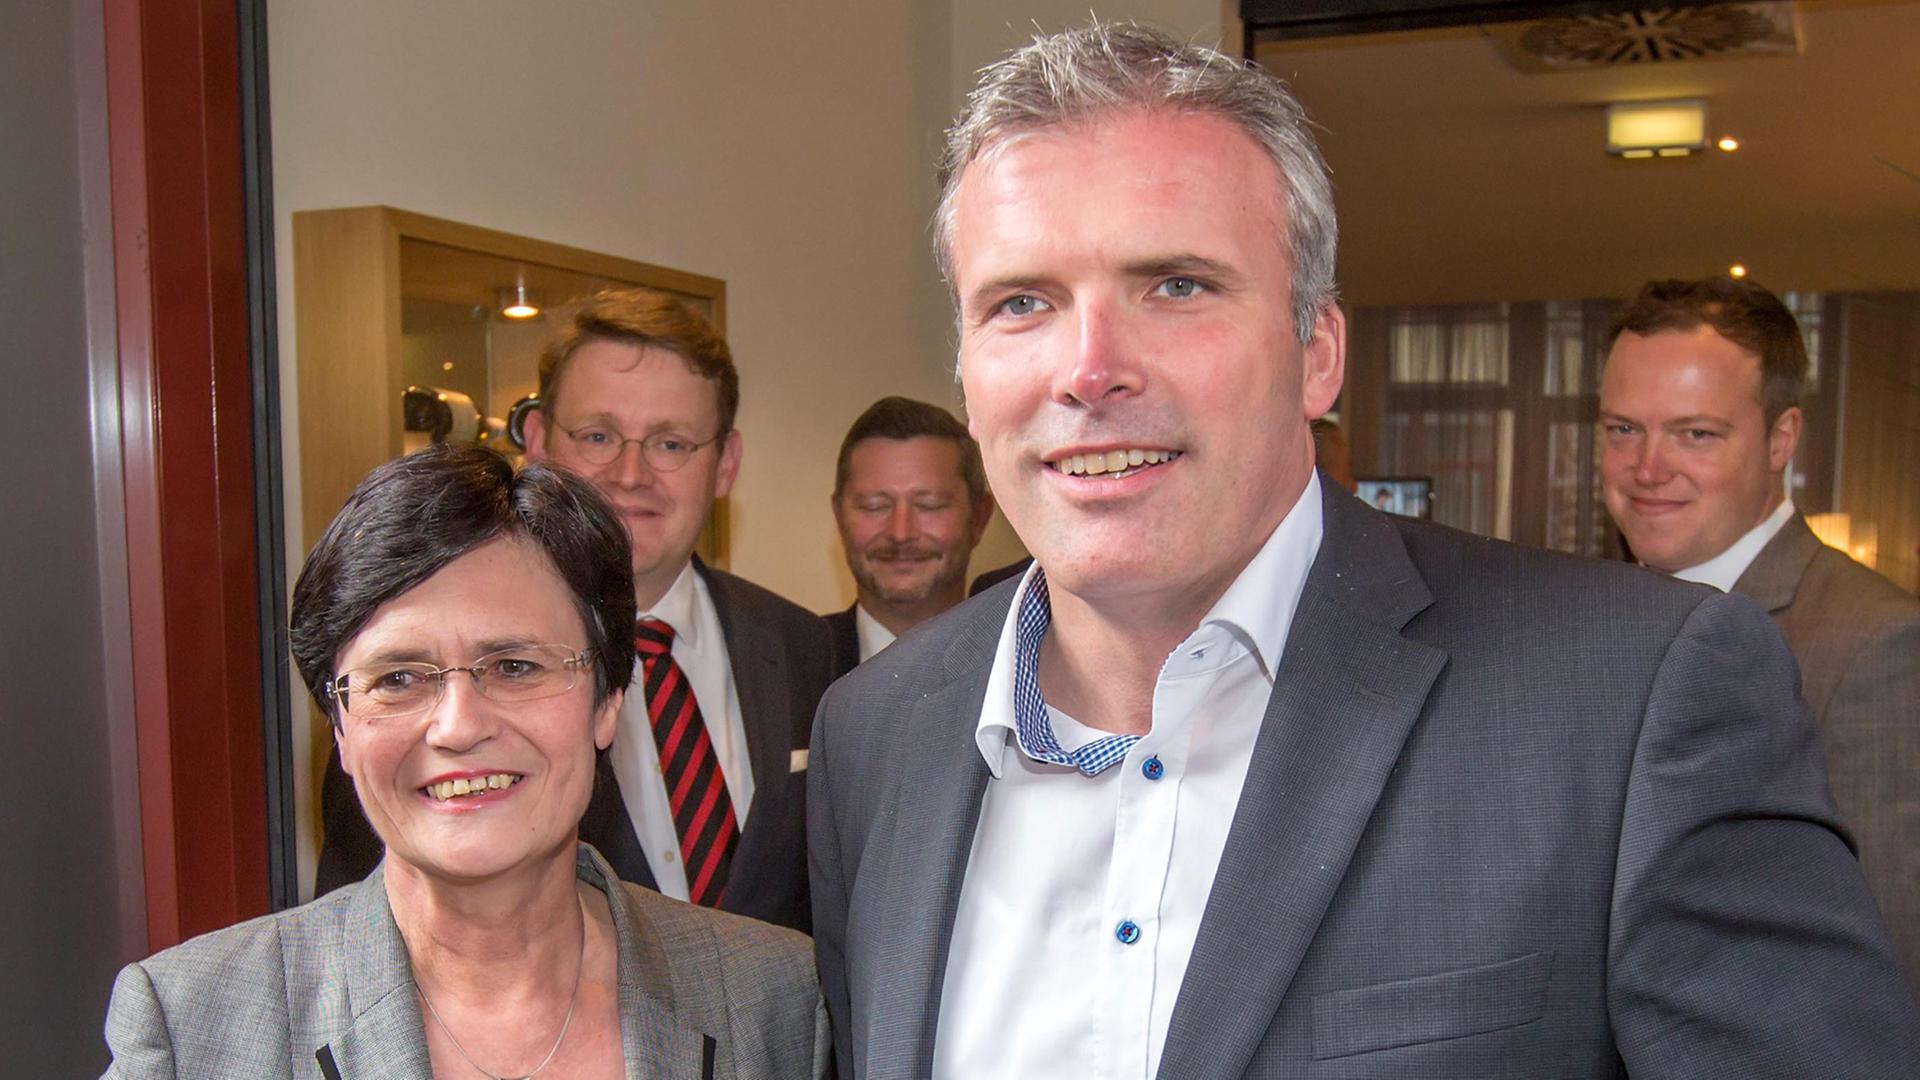 Thüringens Ministerpräsidentin Christine Lieberknecht (CDU) und Erfurts Oberbürgermeister Andreas Bausewein (SPD) stehen am 17.10.2014 zu Beginn der letzten vorgesehenen Sondierungsrunde zwischen beiden Parteien in Erfurt (Thüringen) nebeneinander.